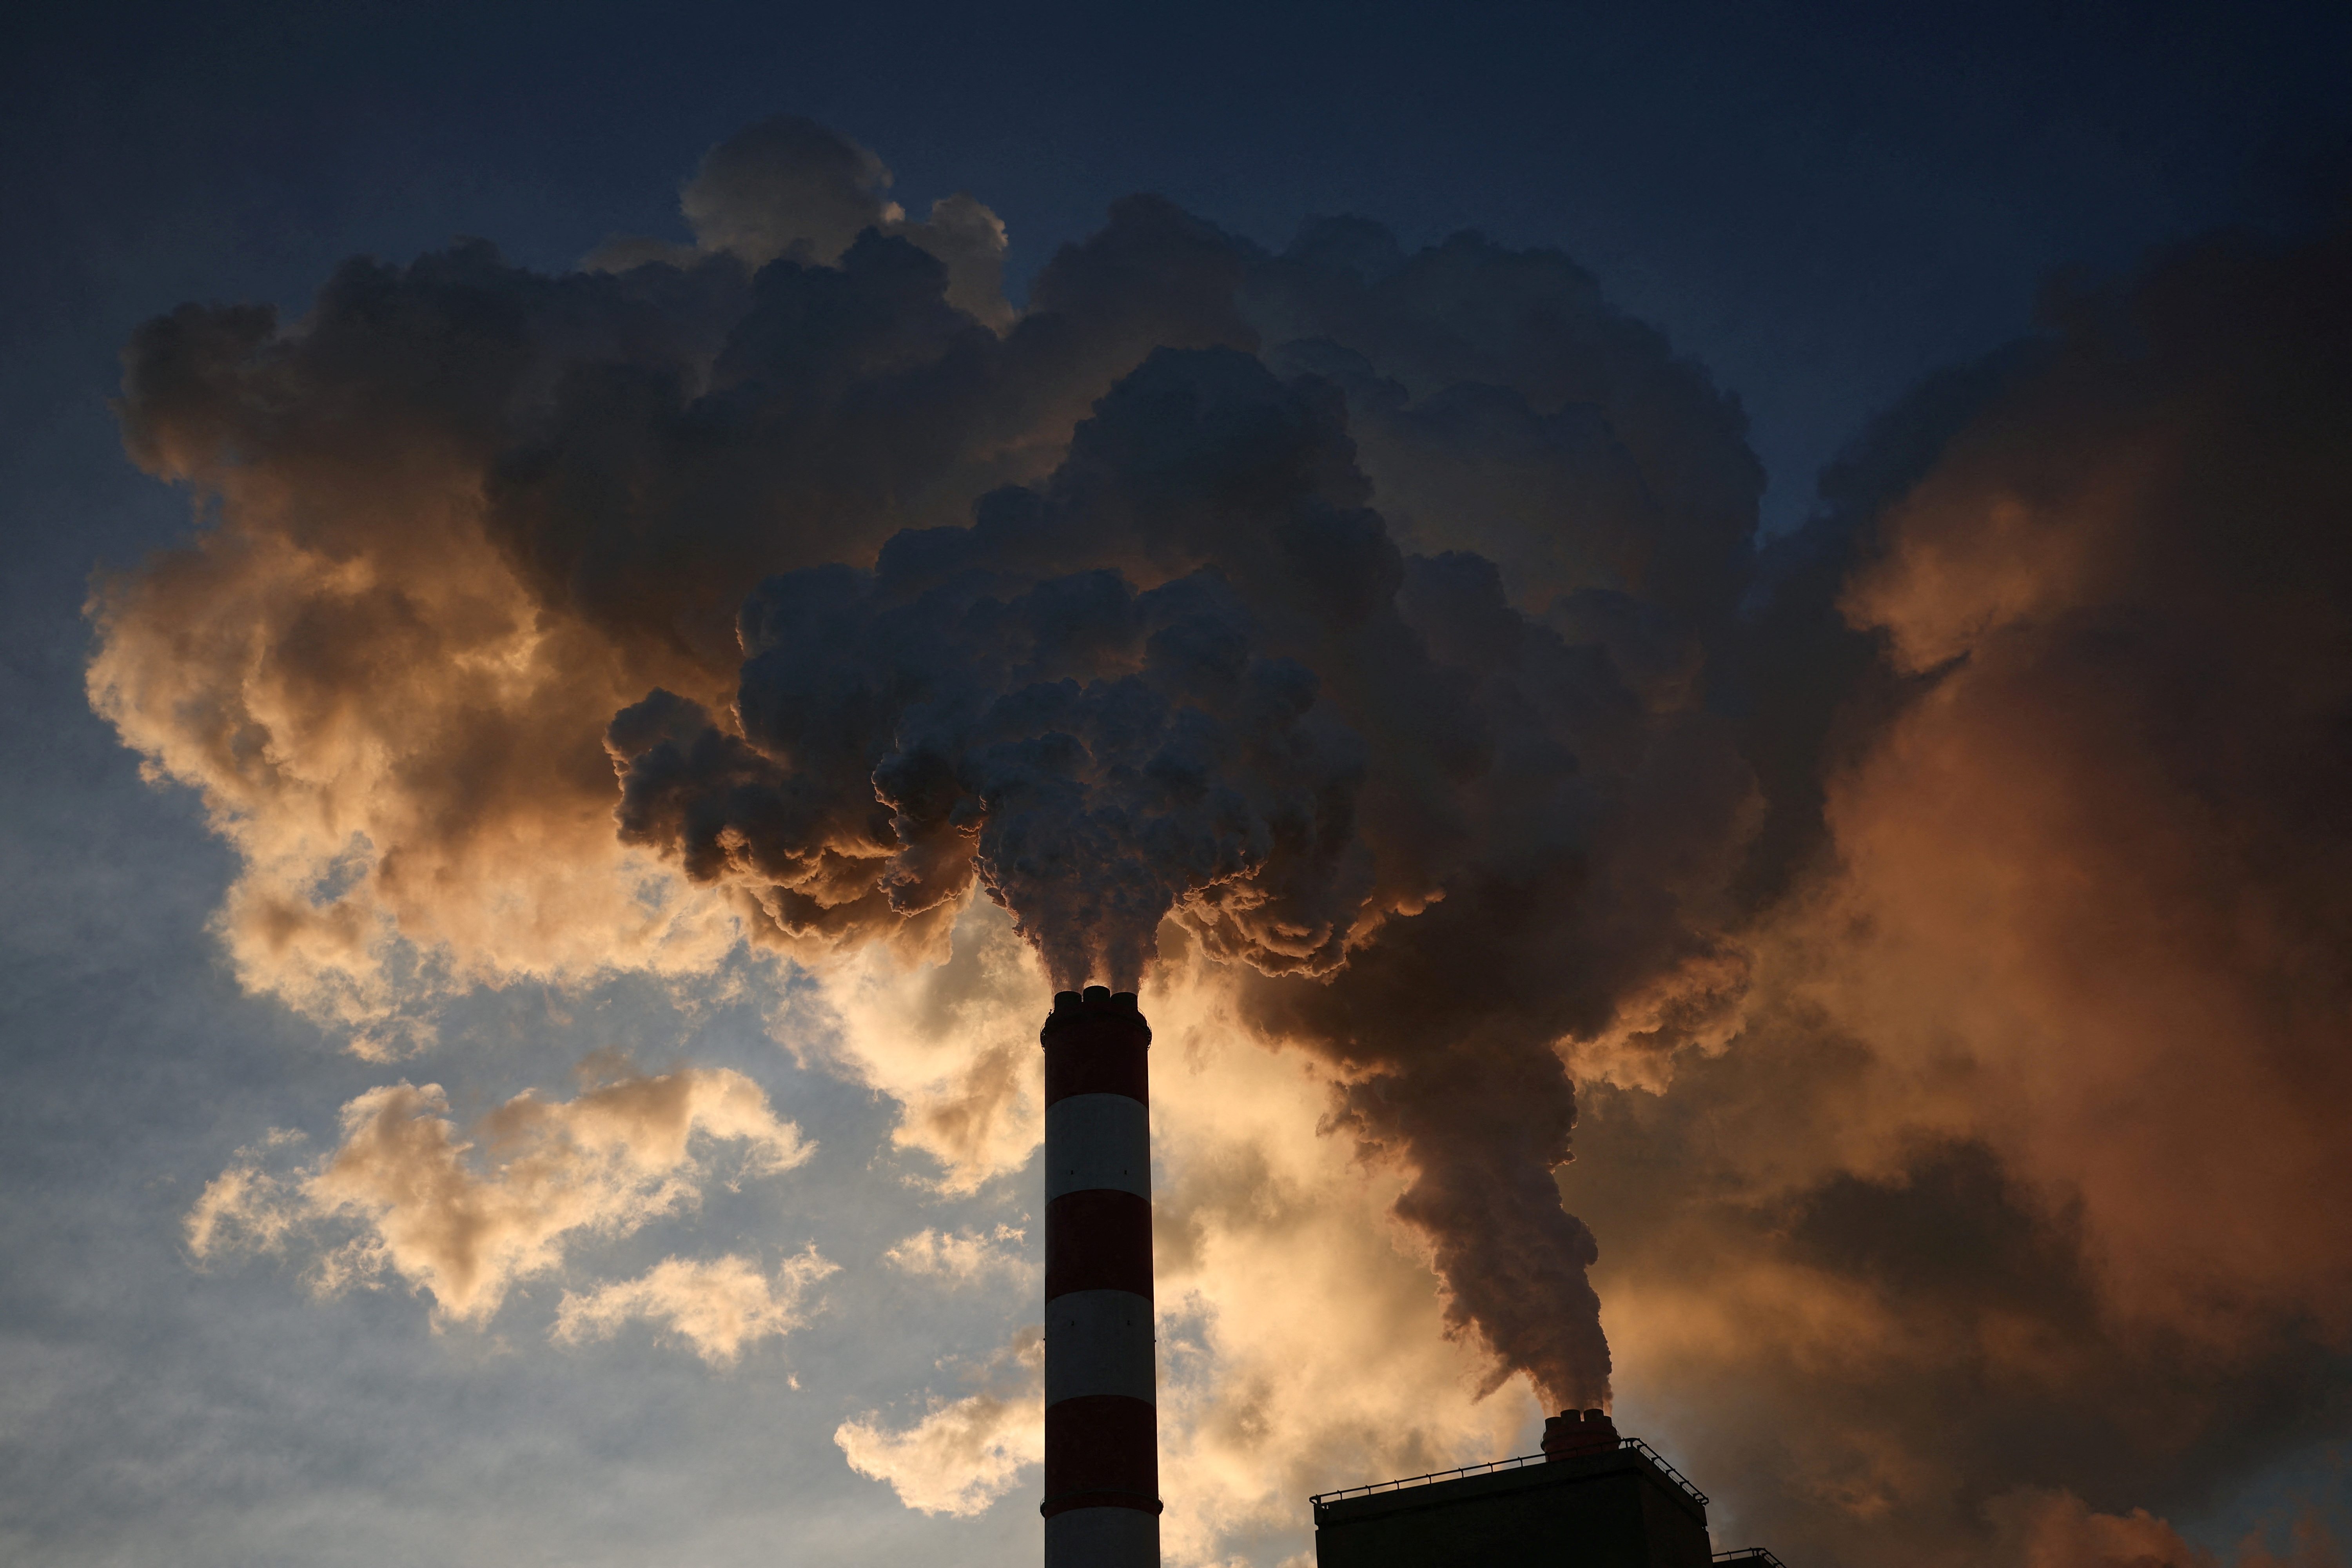 Ｇ７エネ相、石炭火力35年までの廃止で合意 日独に配慮し代替目標も - ロイター (Reuters Japan)